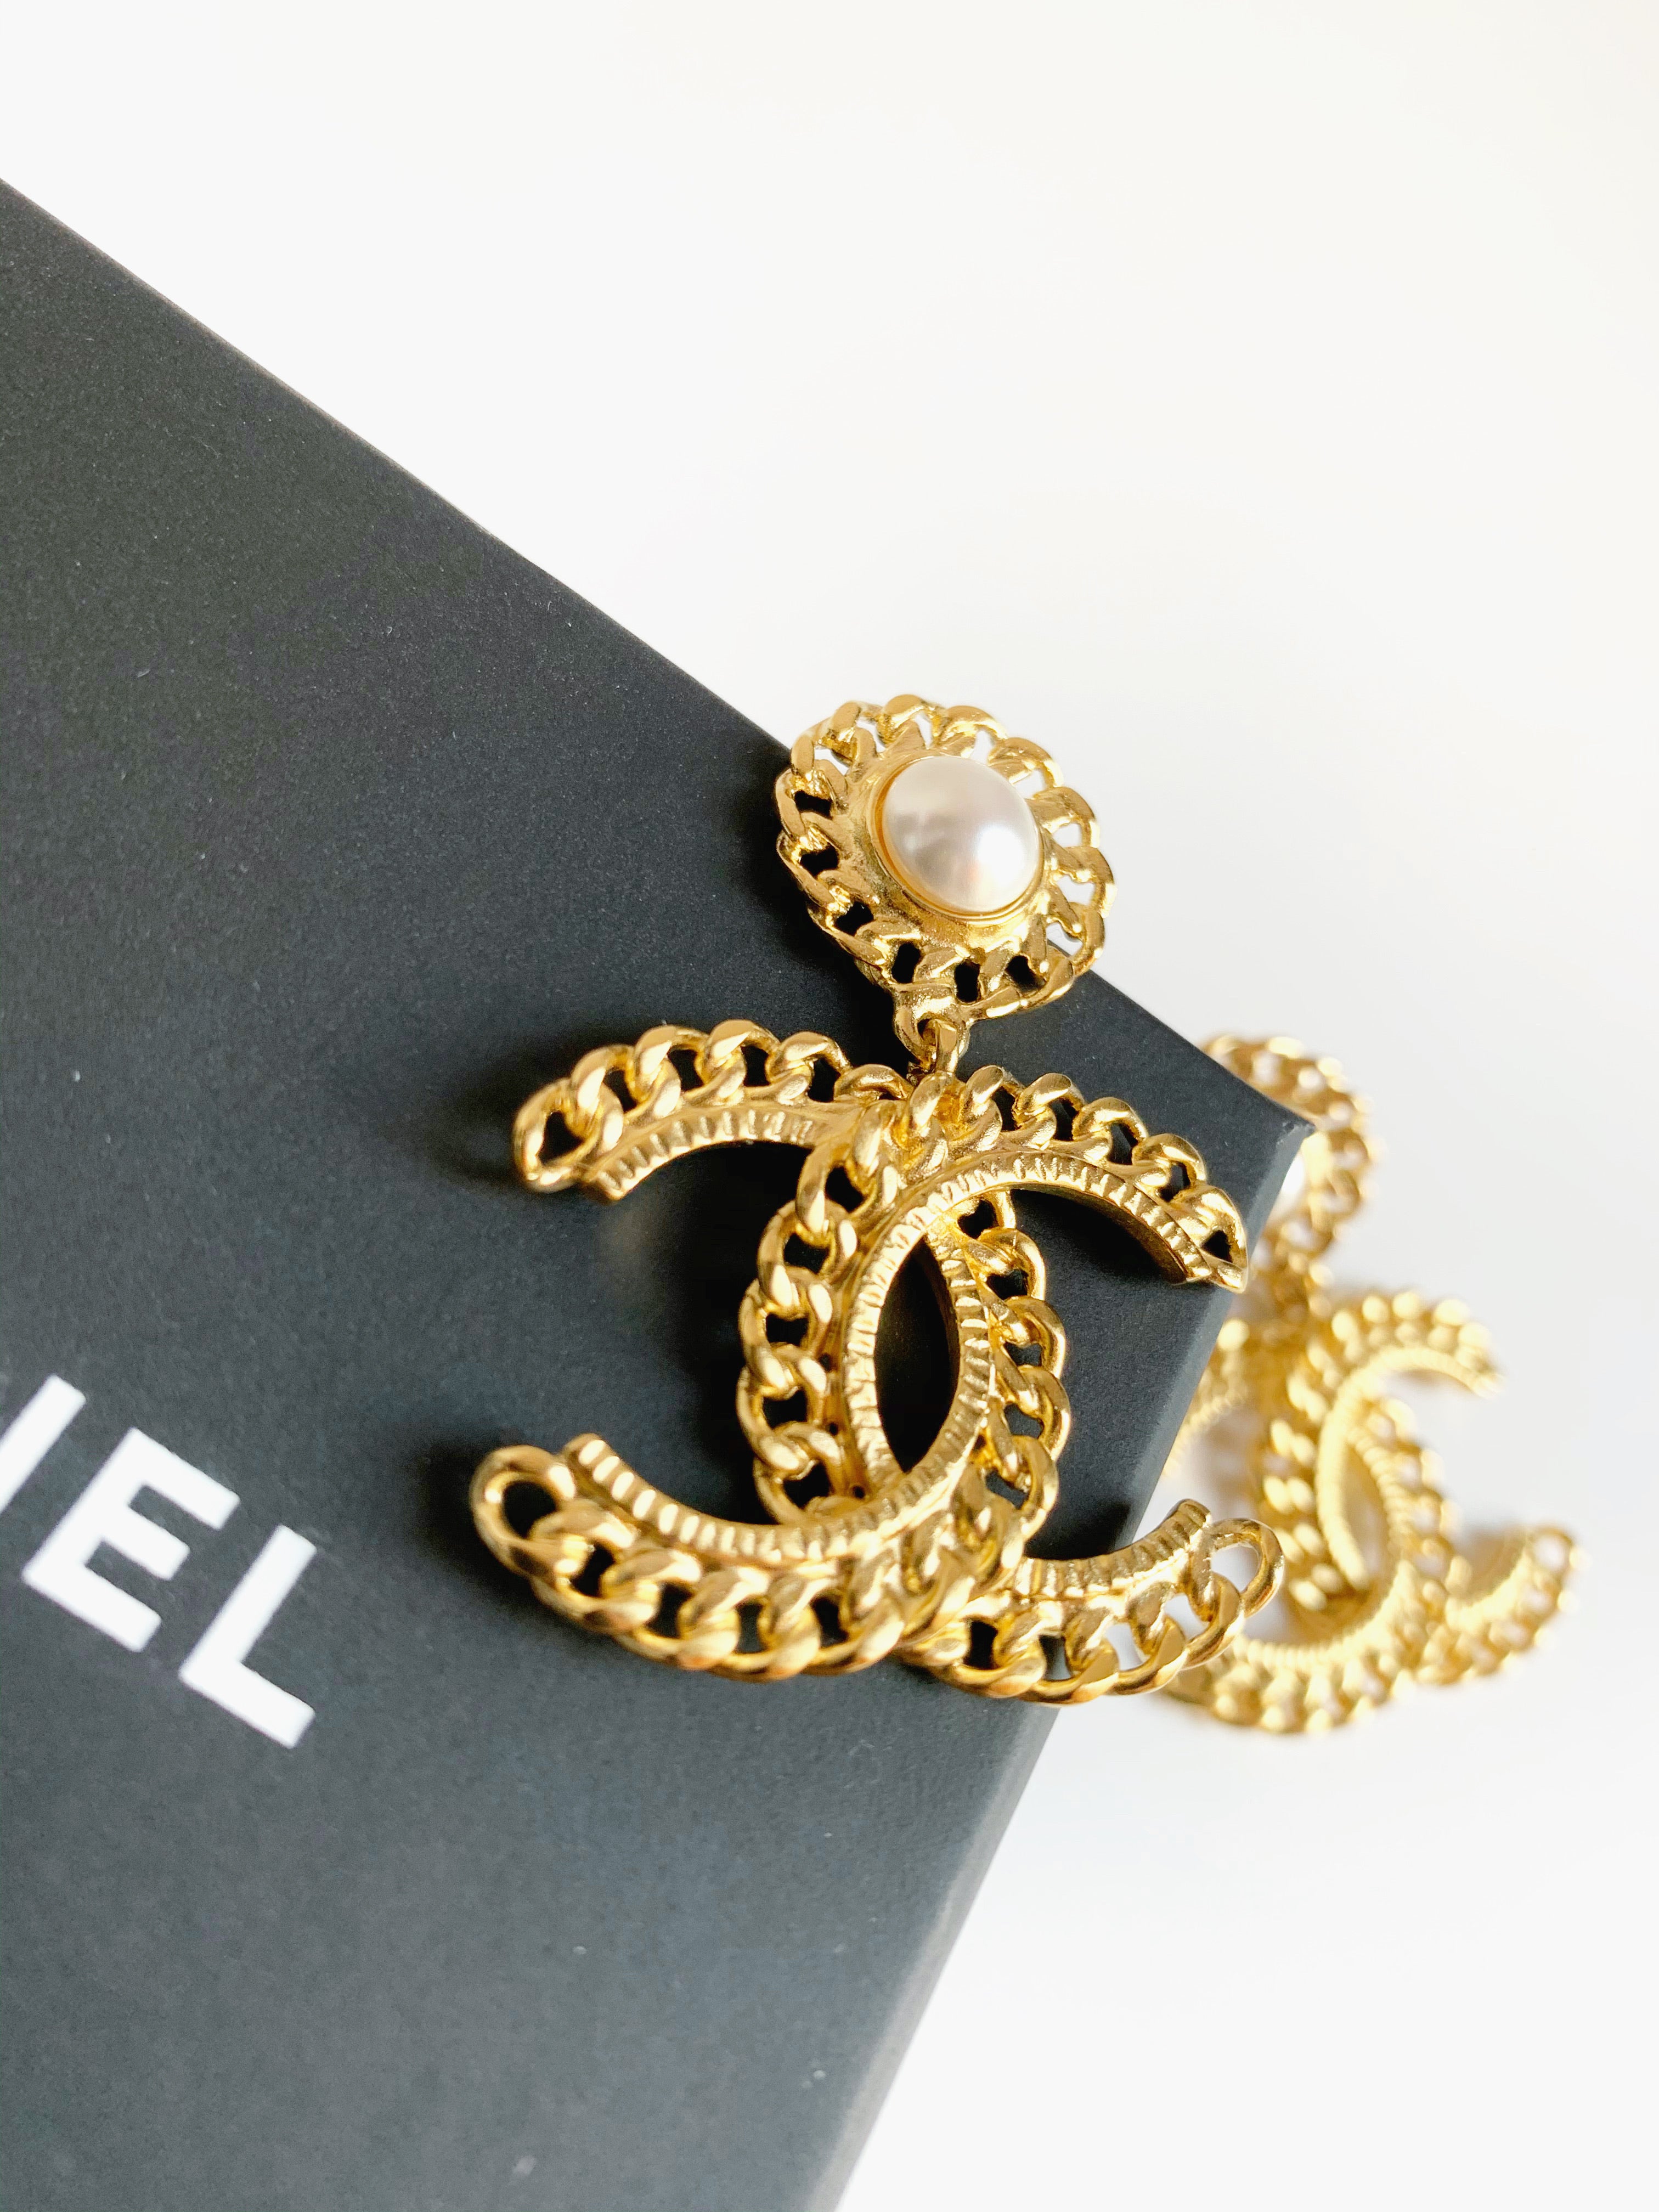 Chanel earrings no.5 bottle - Gem